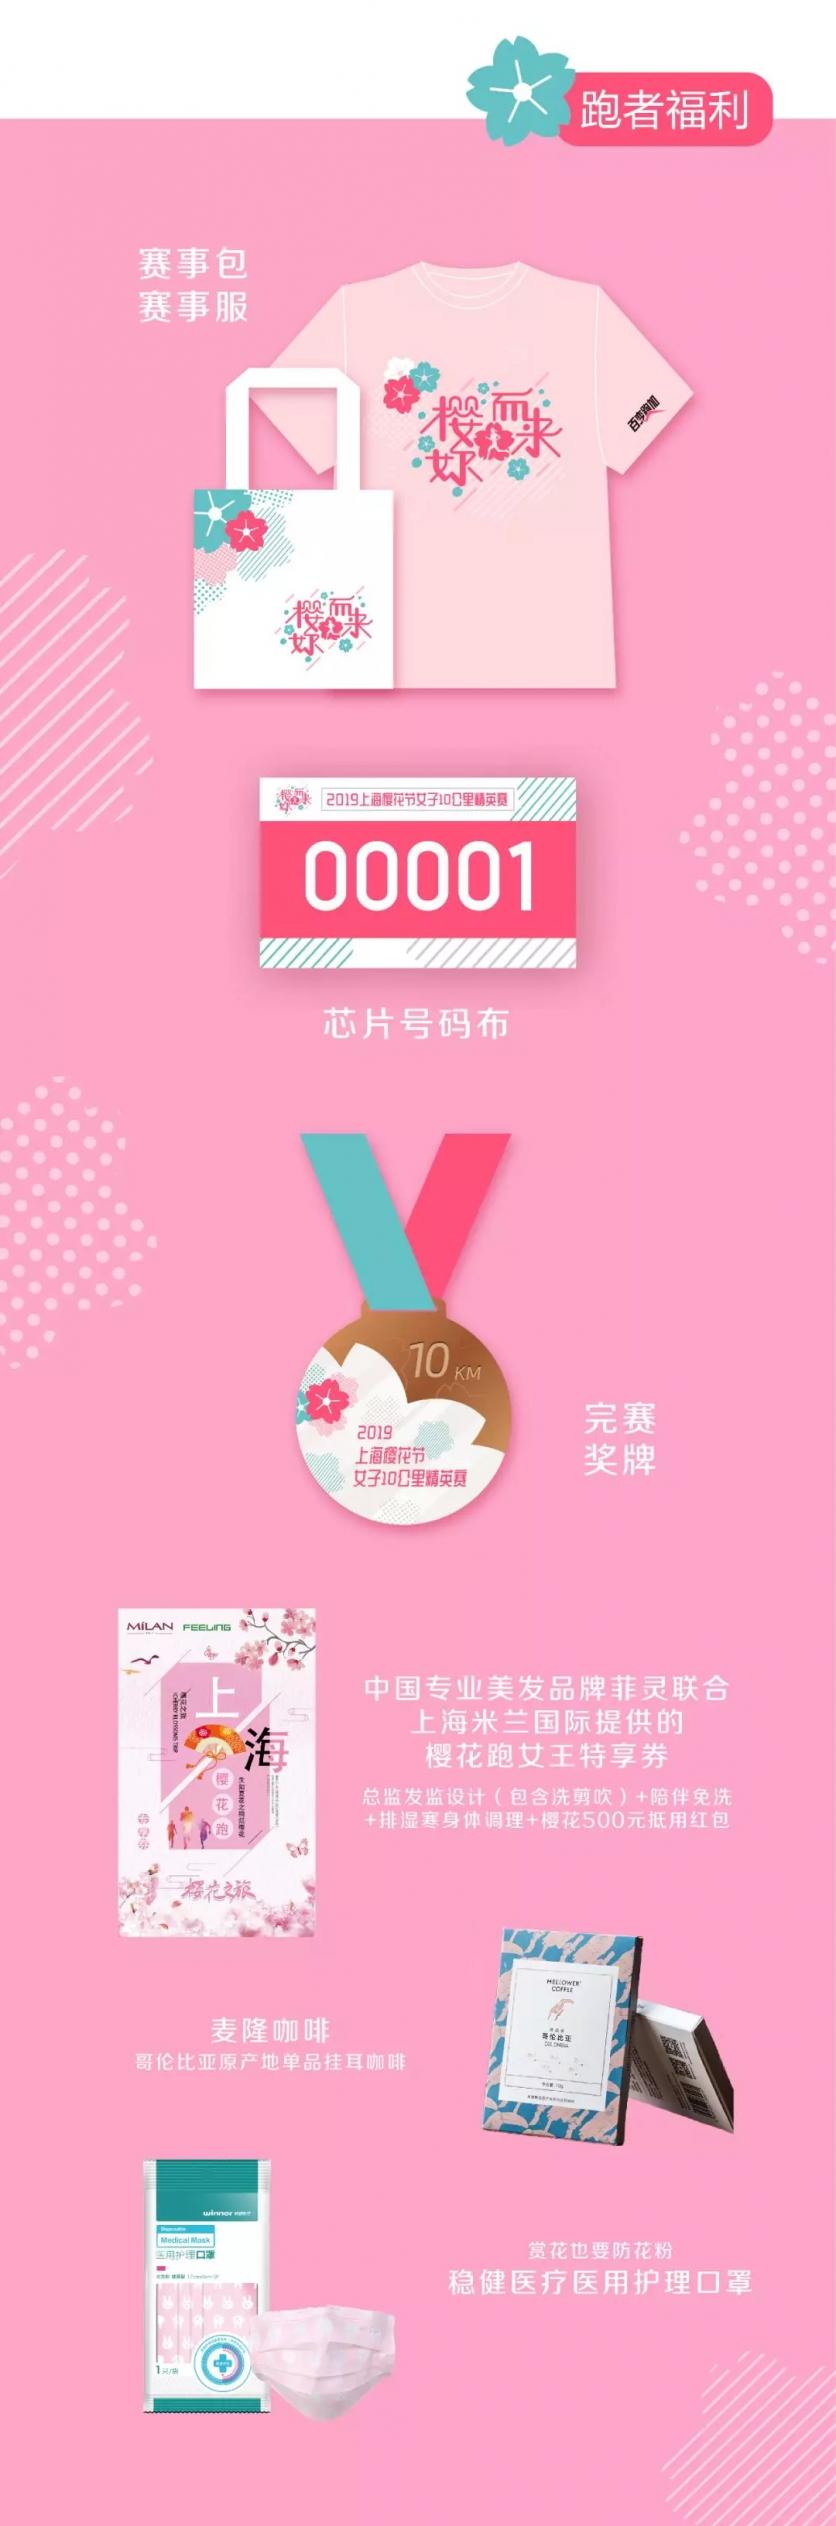 2019上海樱花节女子10公里赛事报名时间+方式